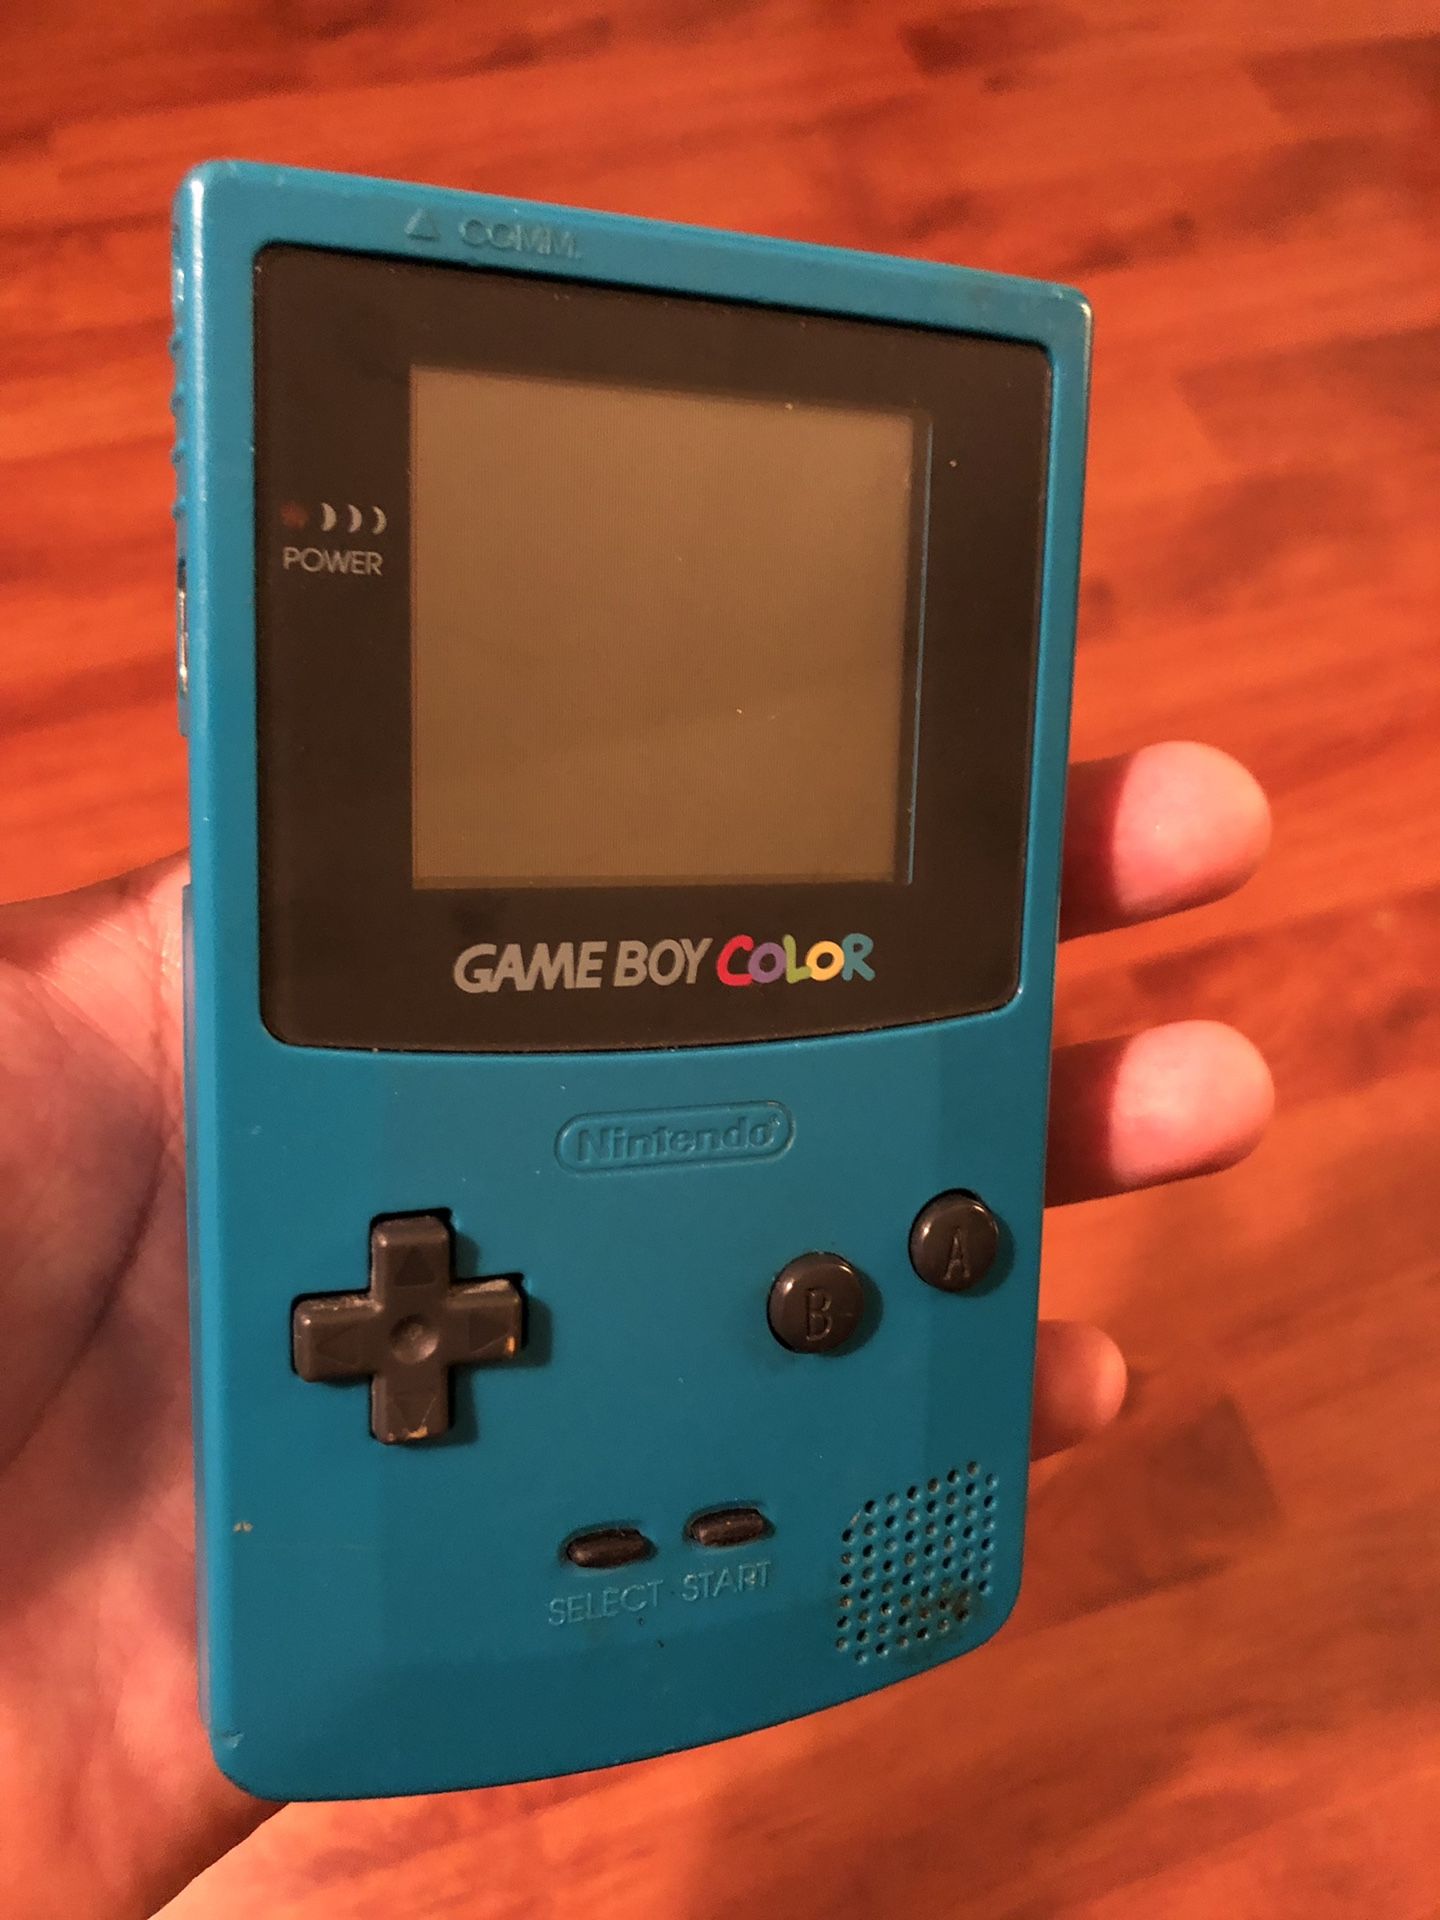 Game boy color